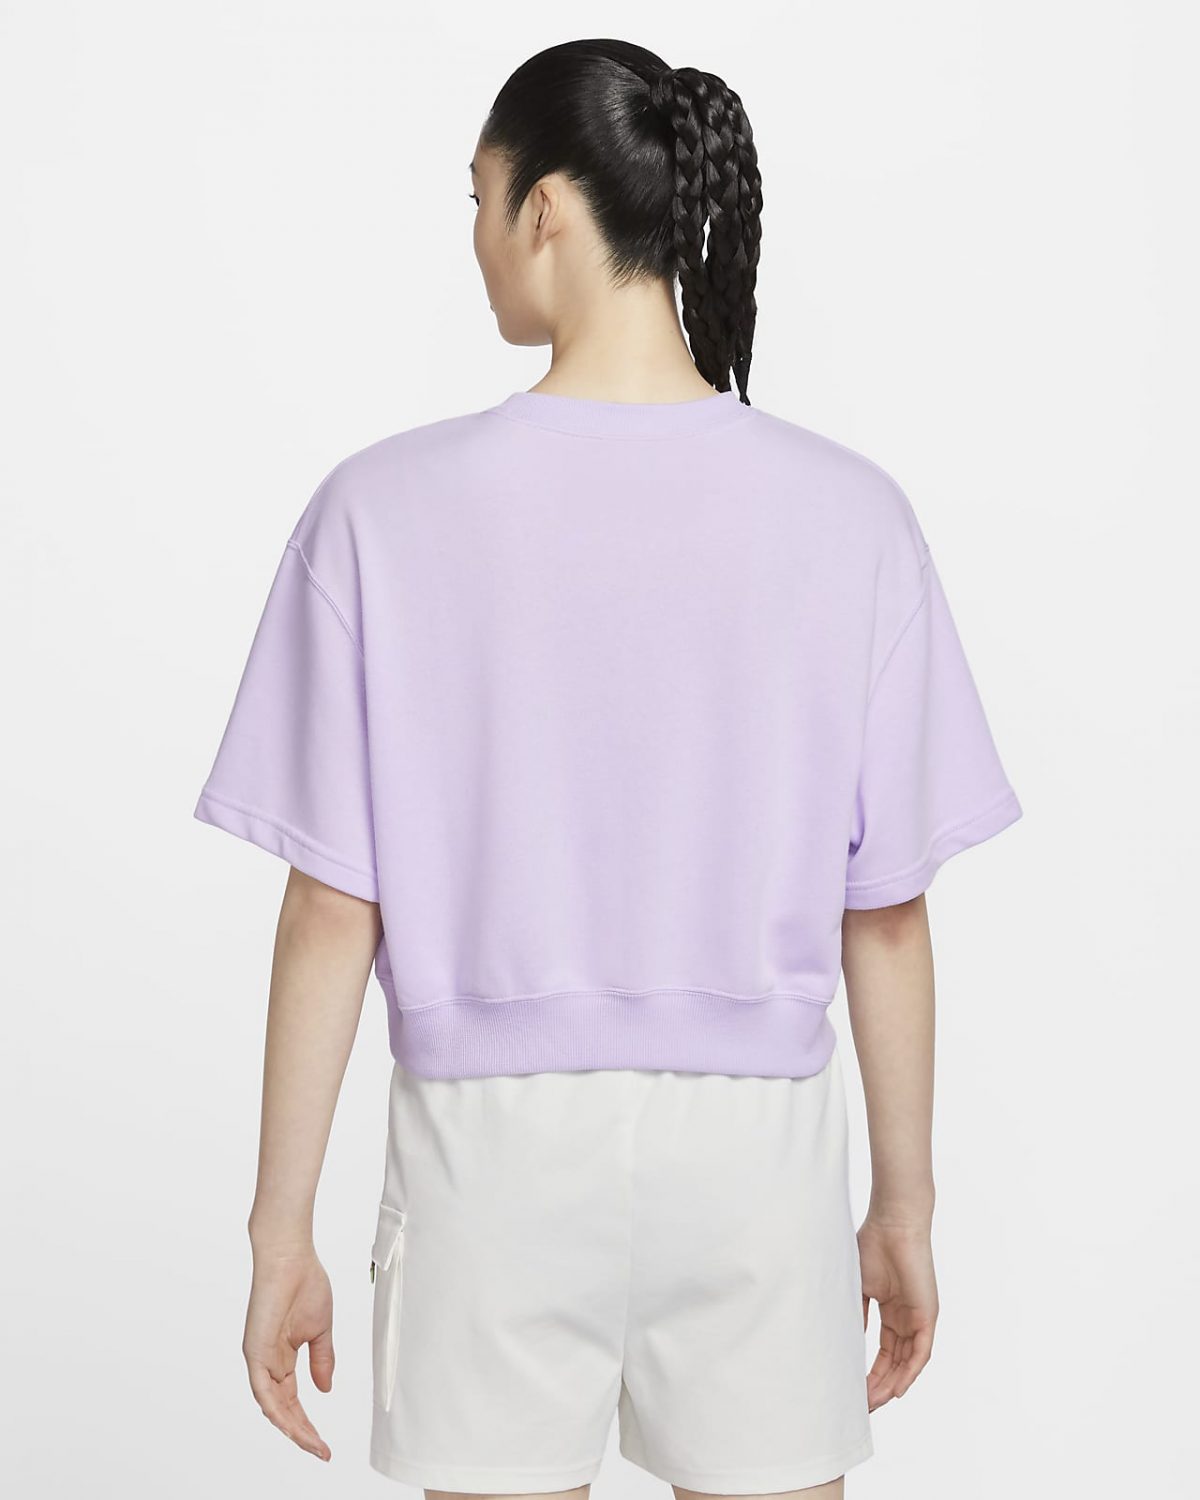 Женский топ Nike Sportswear фиолетовый фотография